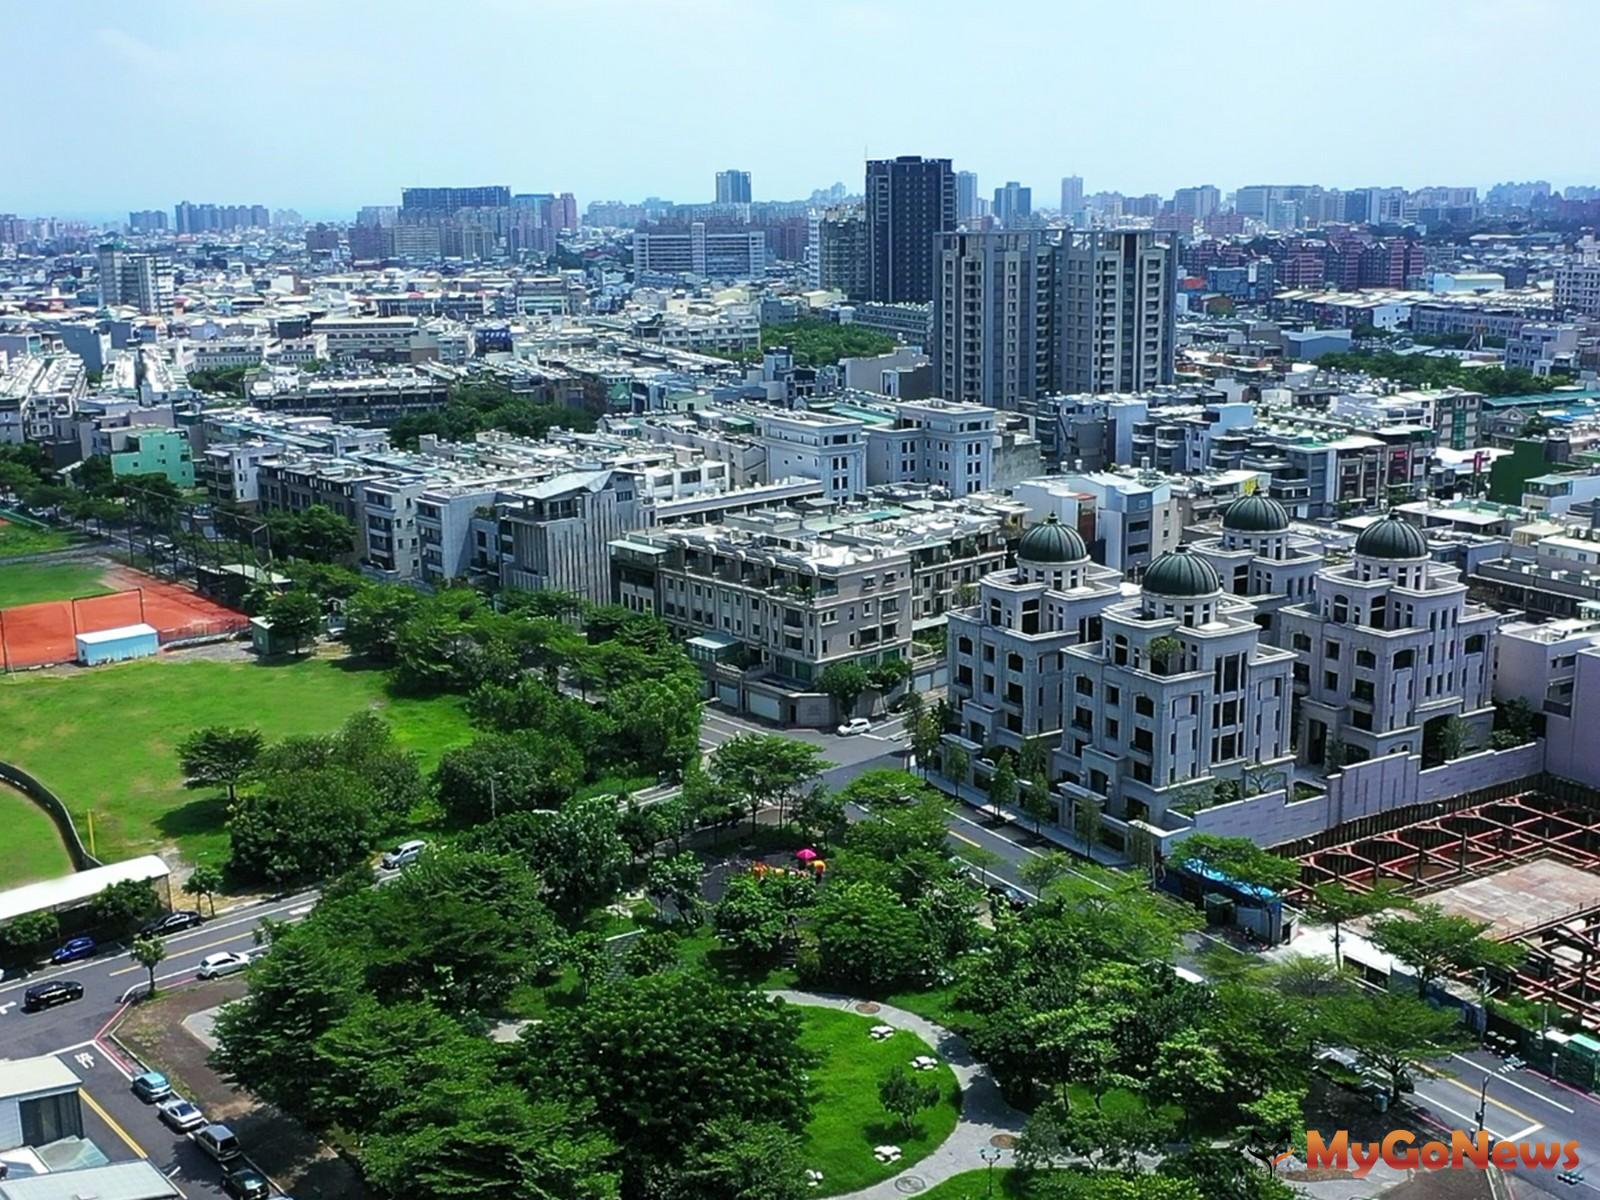 媲美大安區生活質感 台南這一區低密度純住宅取勝